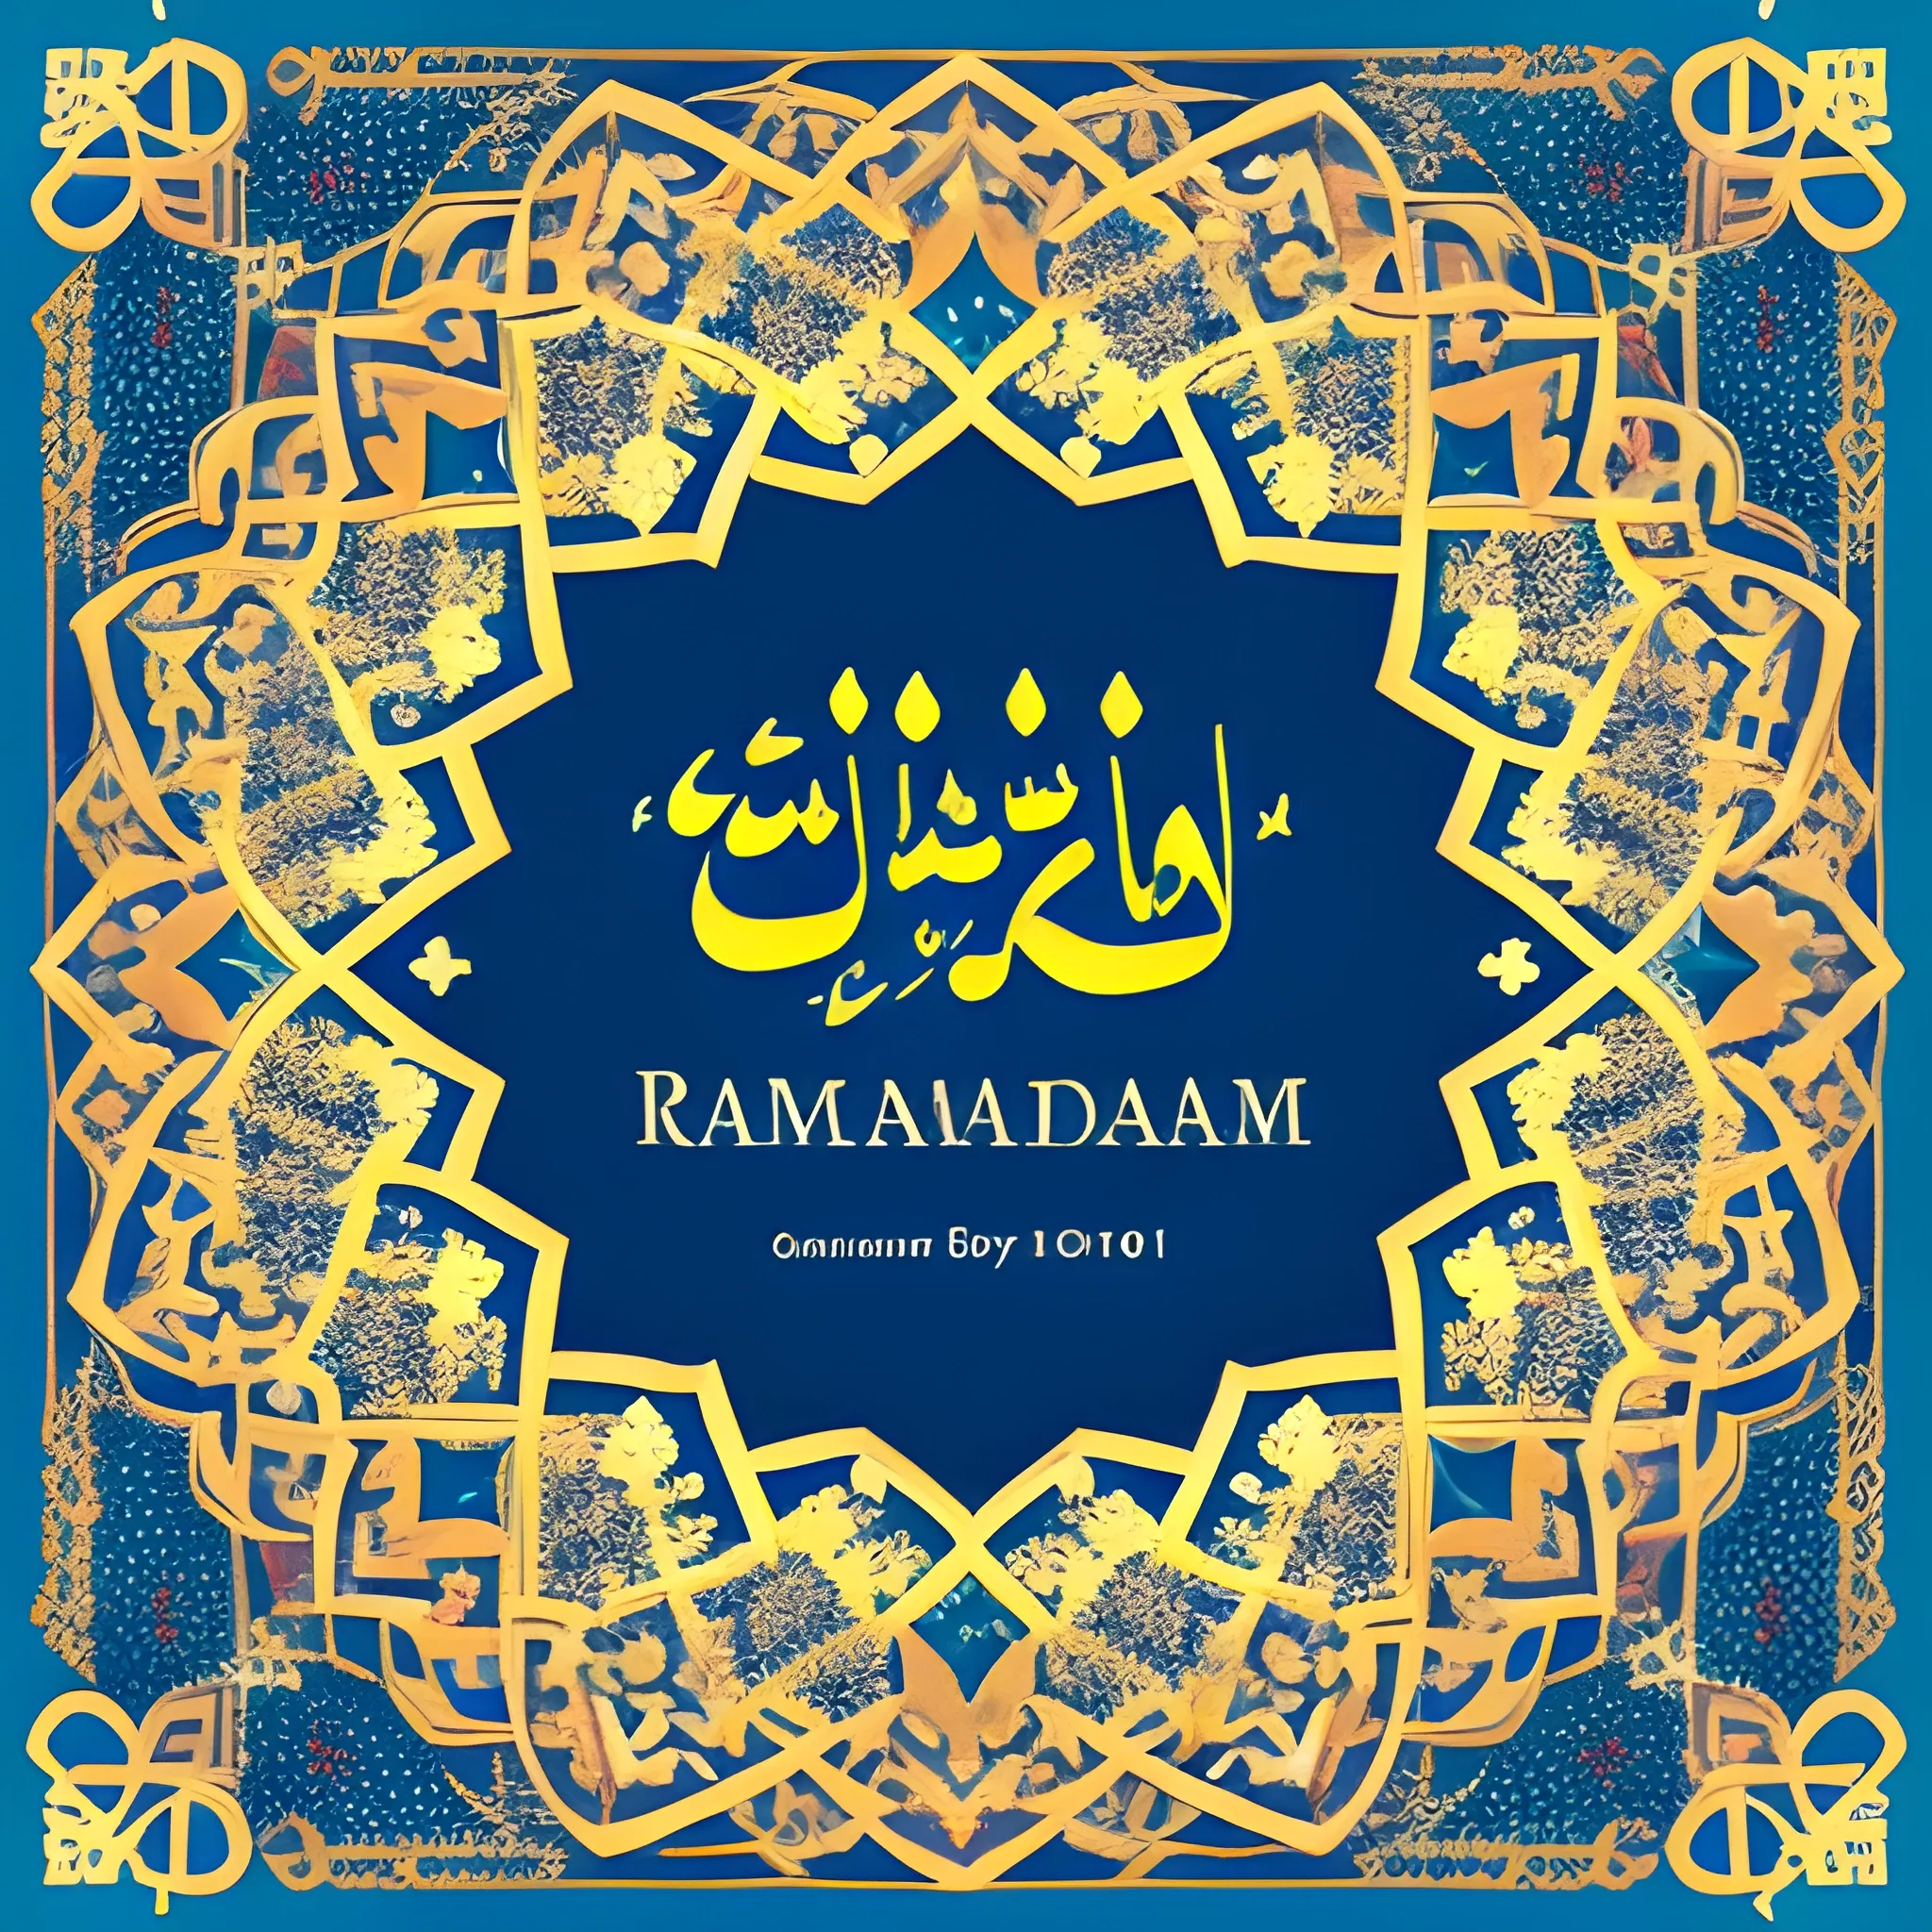 Ramadan kareem 